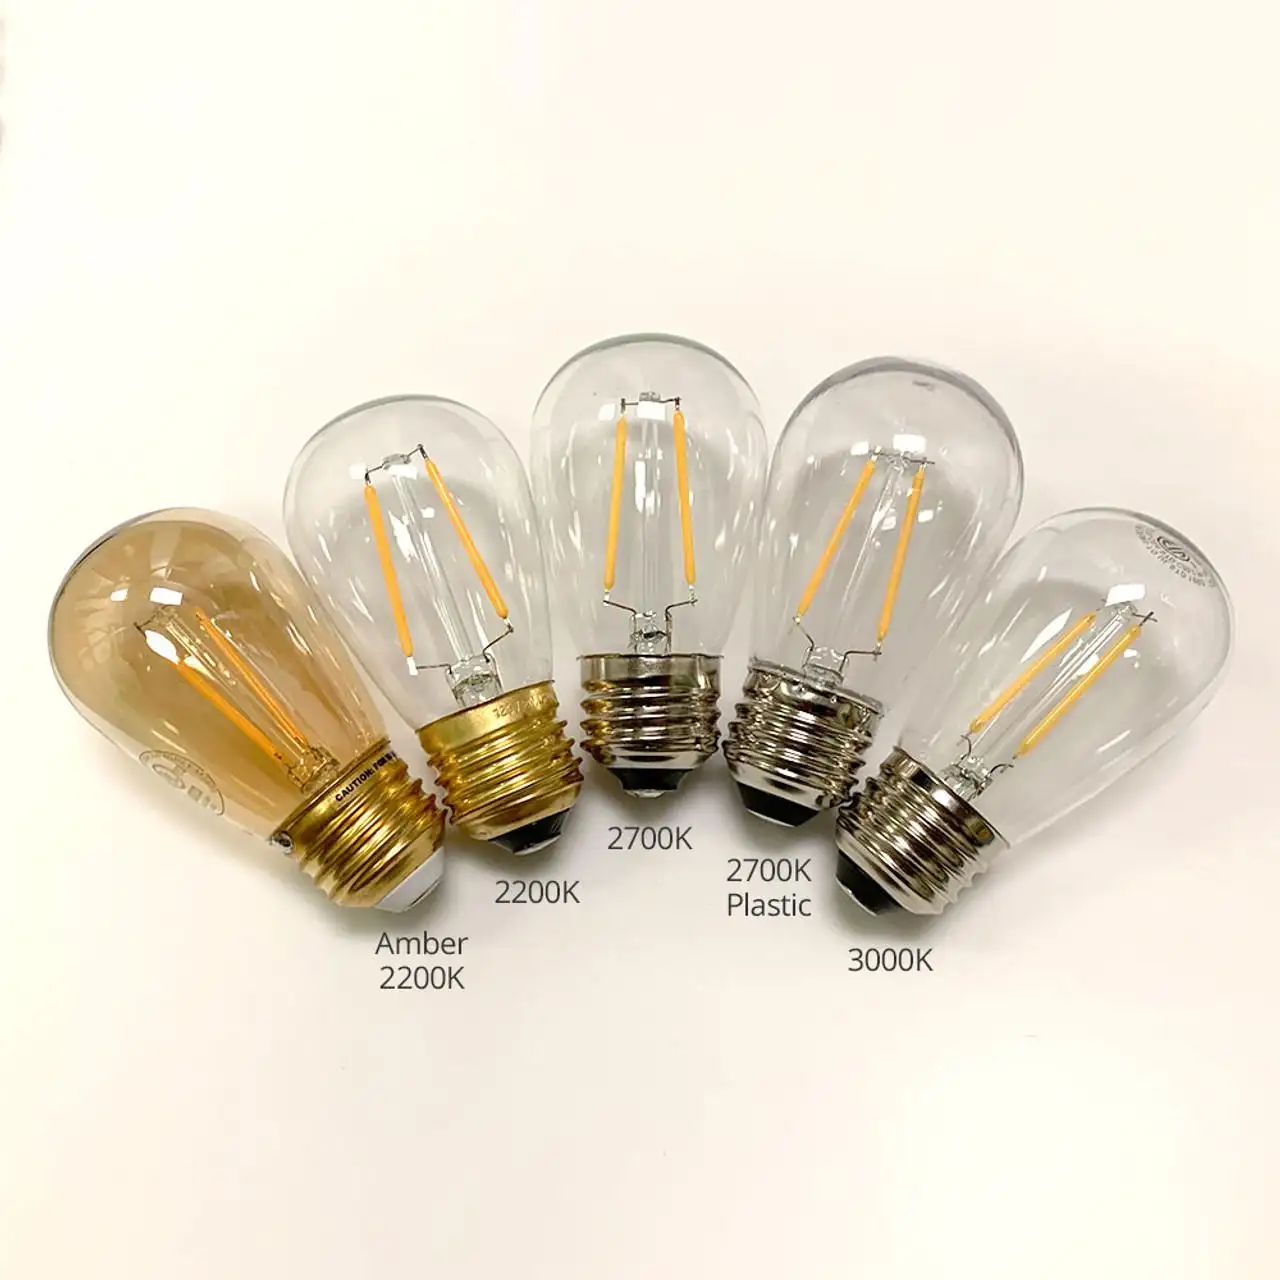 110-130V/220-240V/5V/12V/24V/36V 1800K/2200K/3000K Dimmable 1W/2W/4W/6W E26/E27 Base S14/ST45 LED Filament Bulb for Lamp